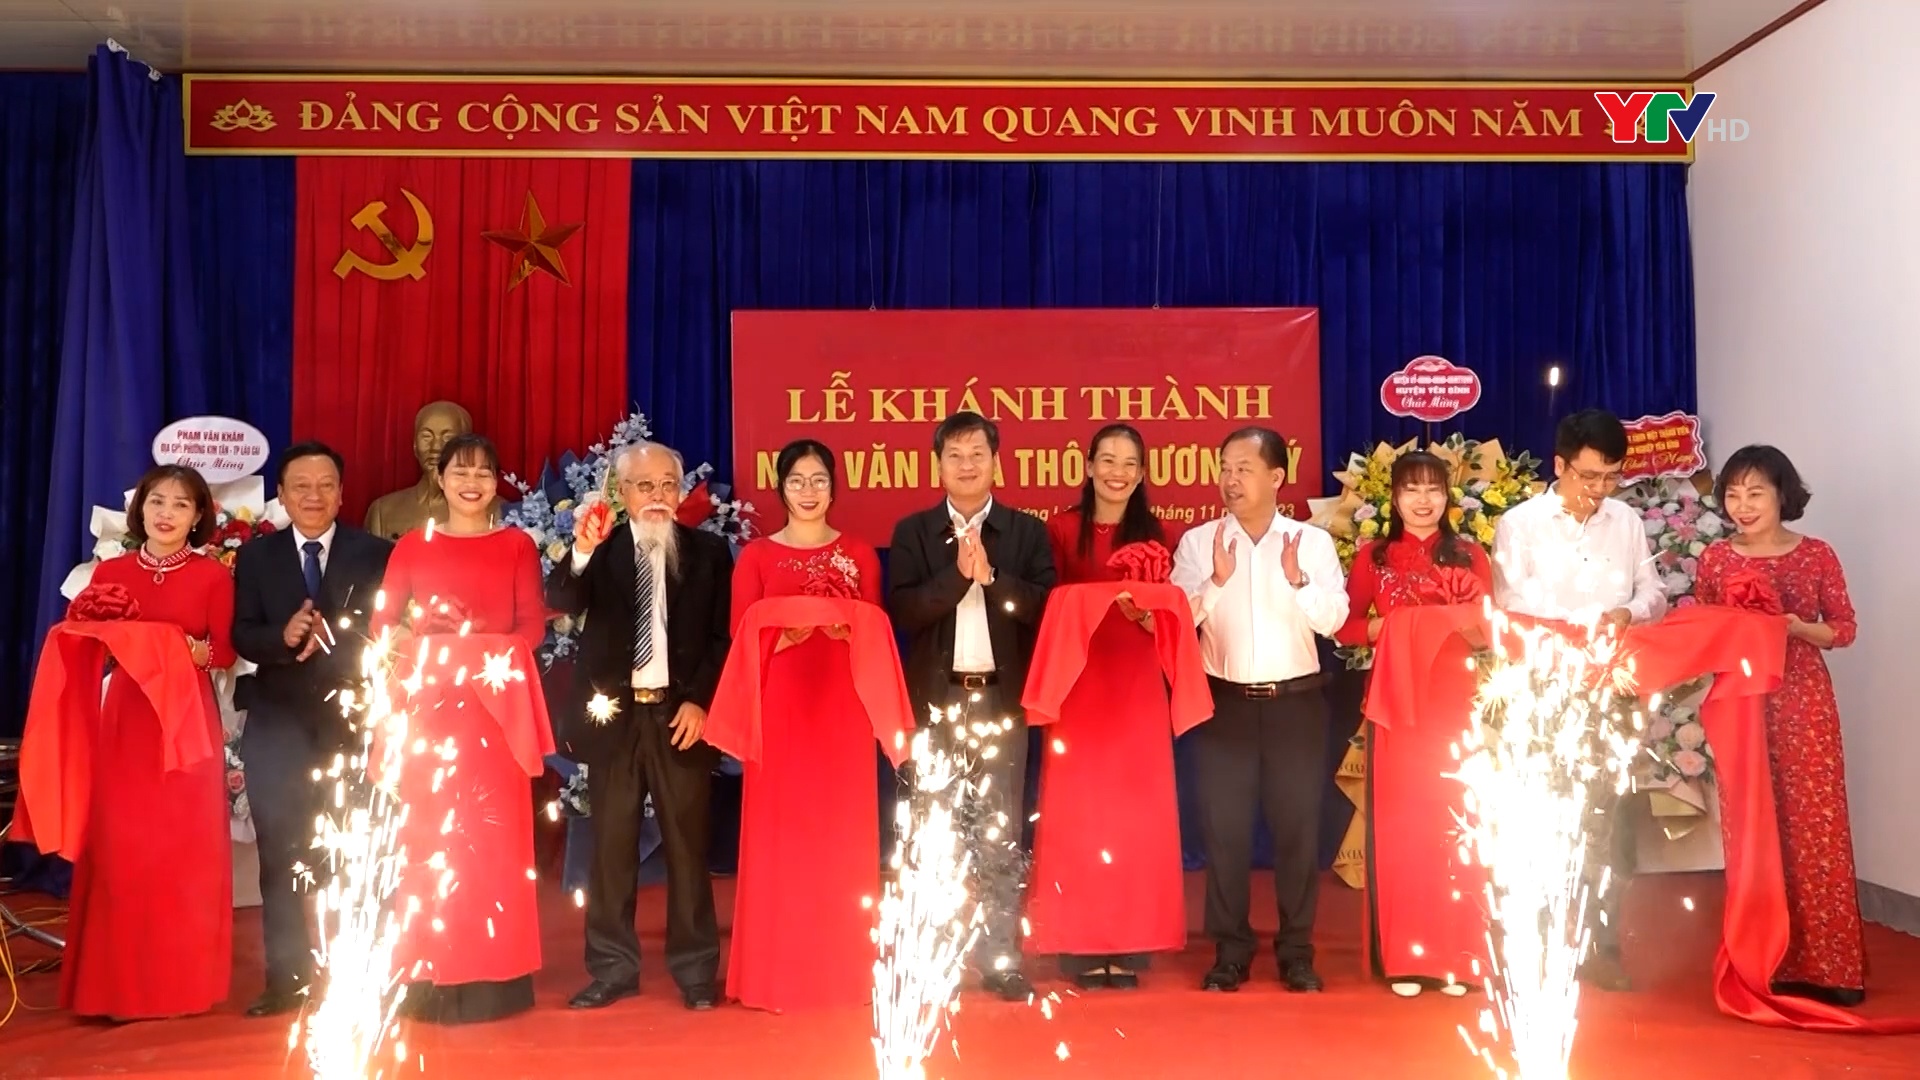 Đồng chí Phó Chủ tịch UBND tỉnh Ngô Hạnh Phúc làm việc với Đảng bộ xã Đại Đồng, huyện Yên Bình